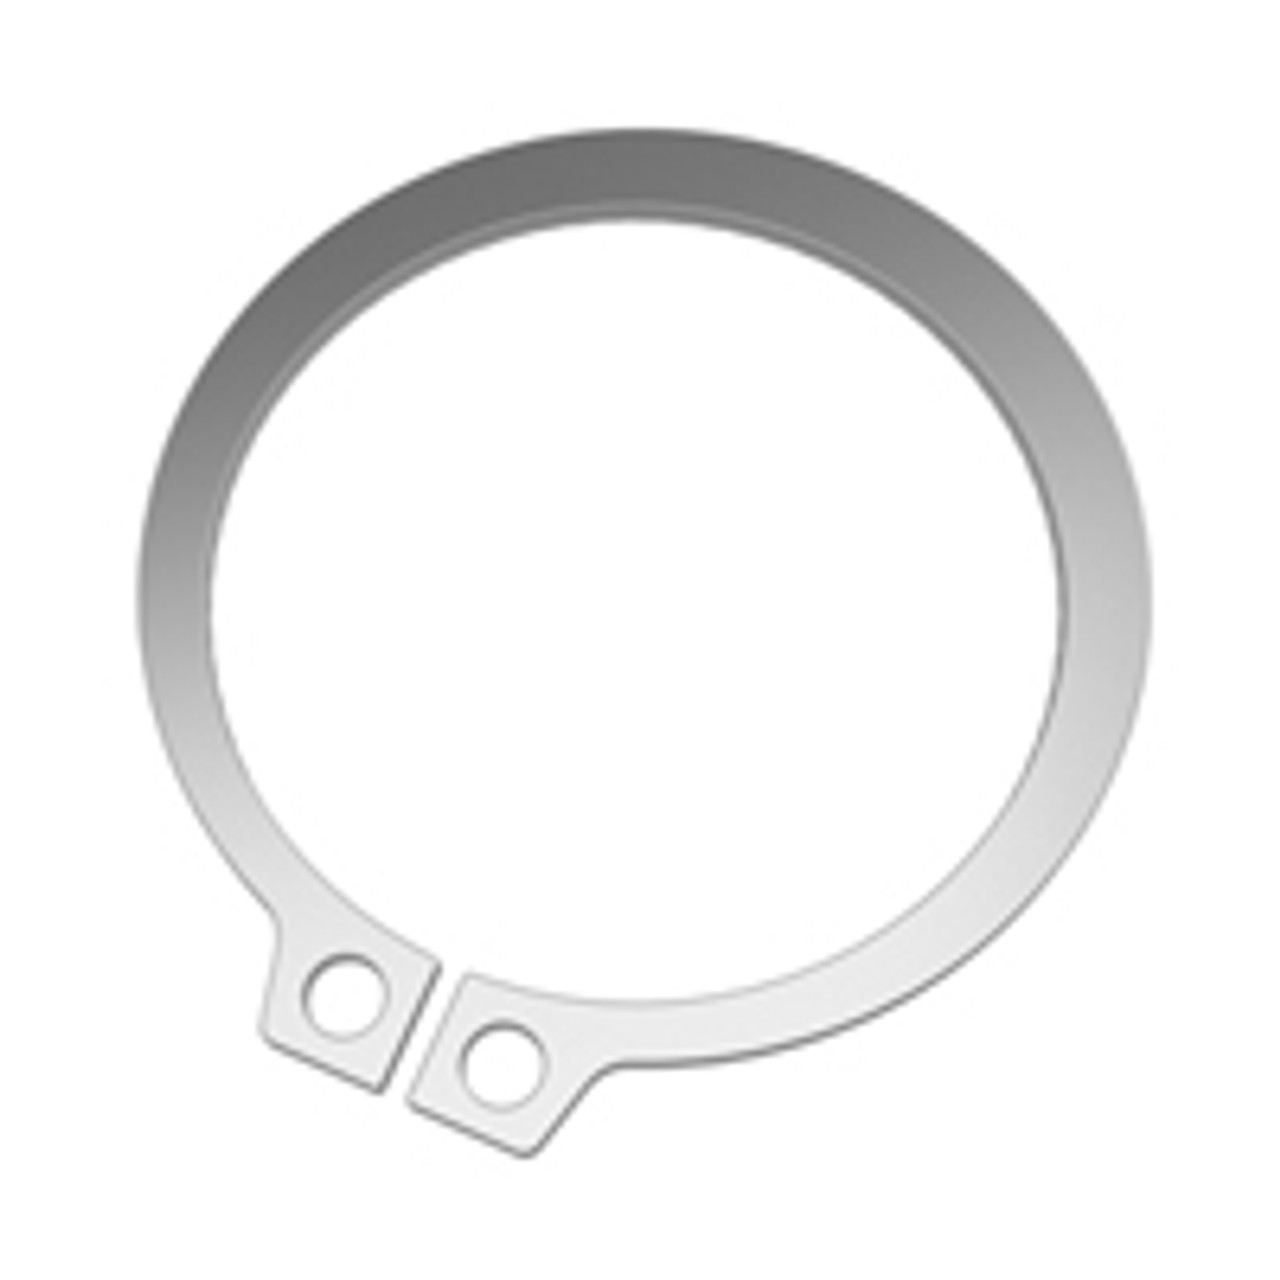 External SAE Stainless Standard Retaining Ring  SH-0362-H